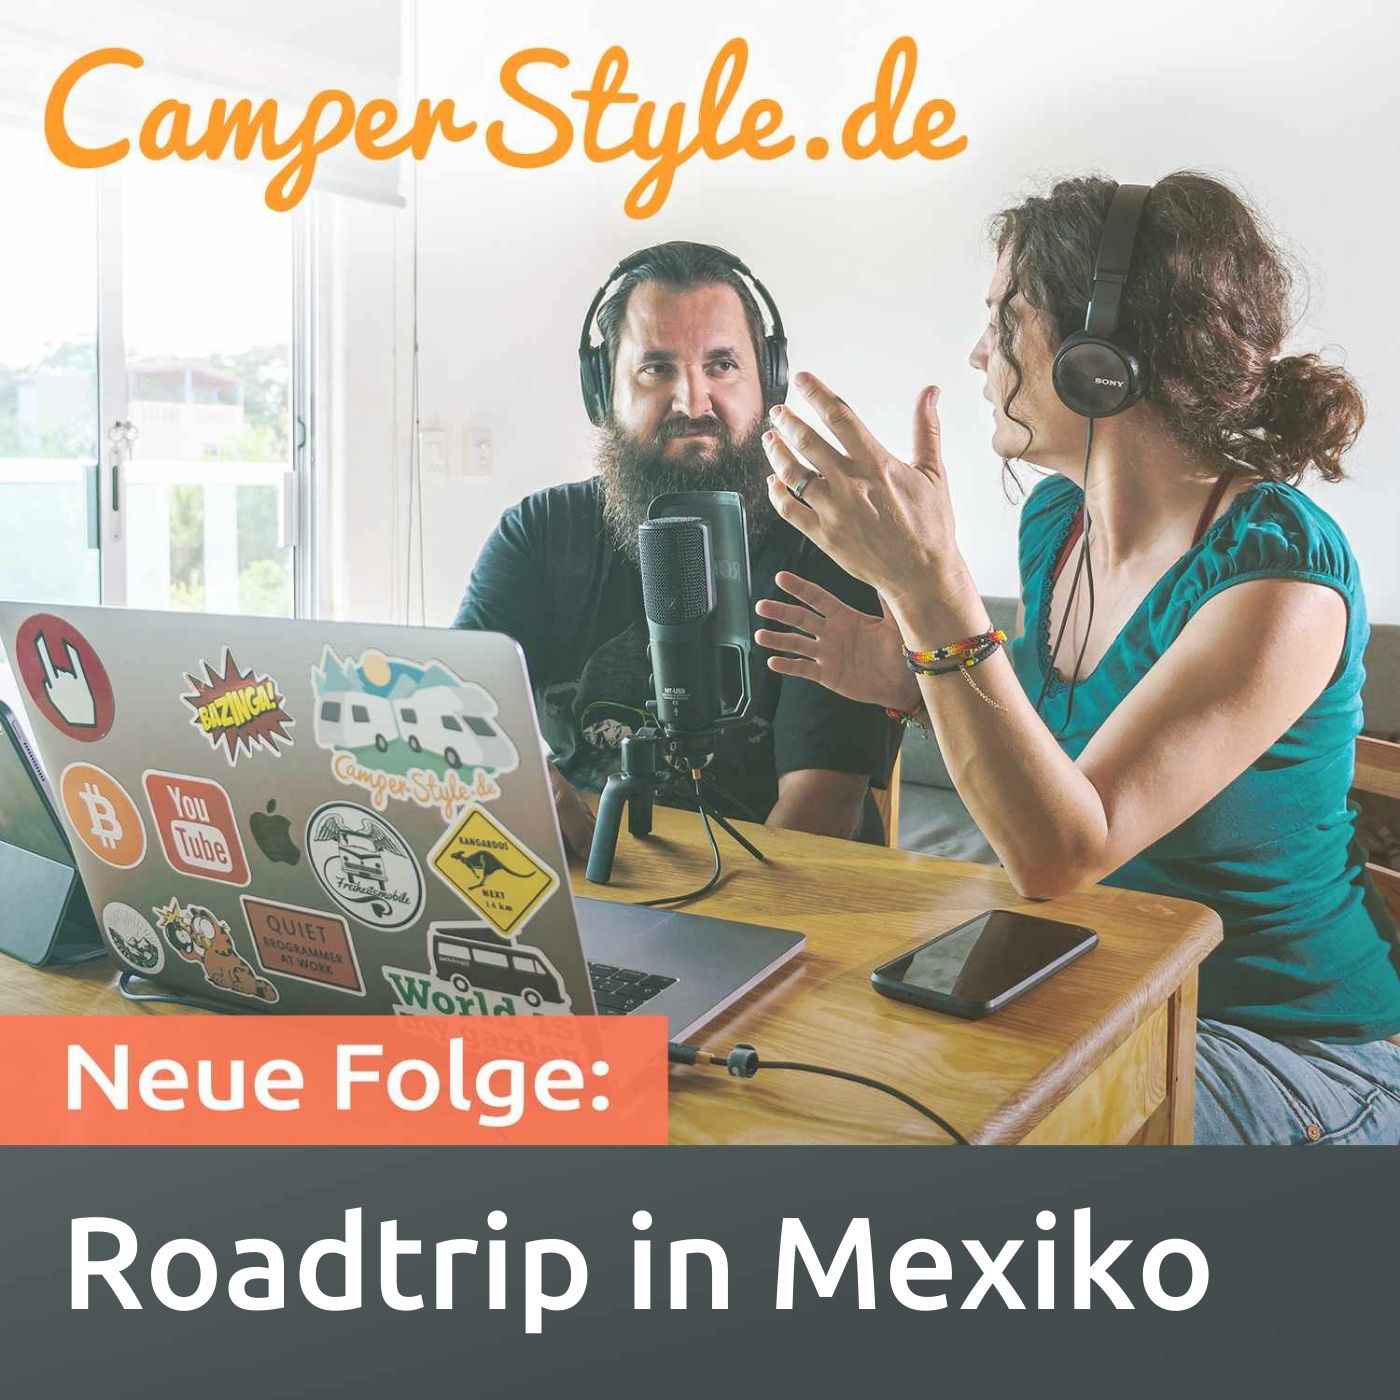 Roadtrip in Mexiko